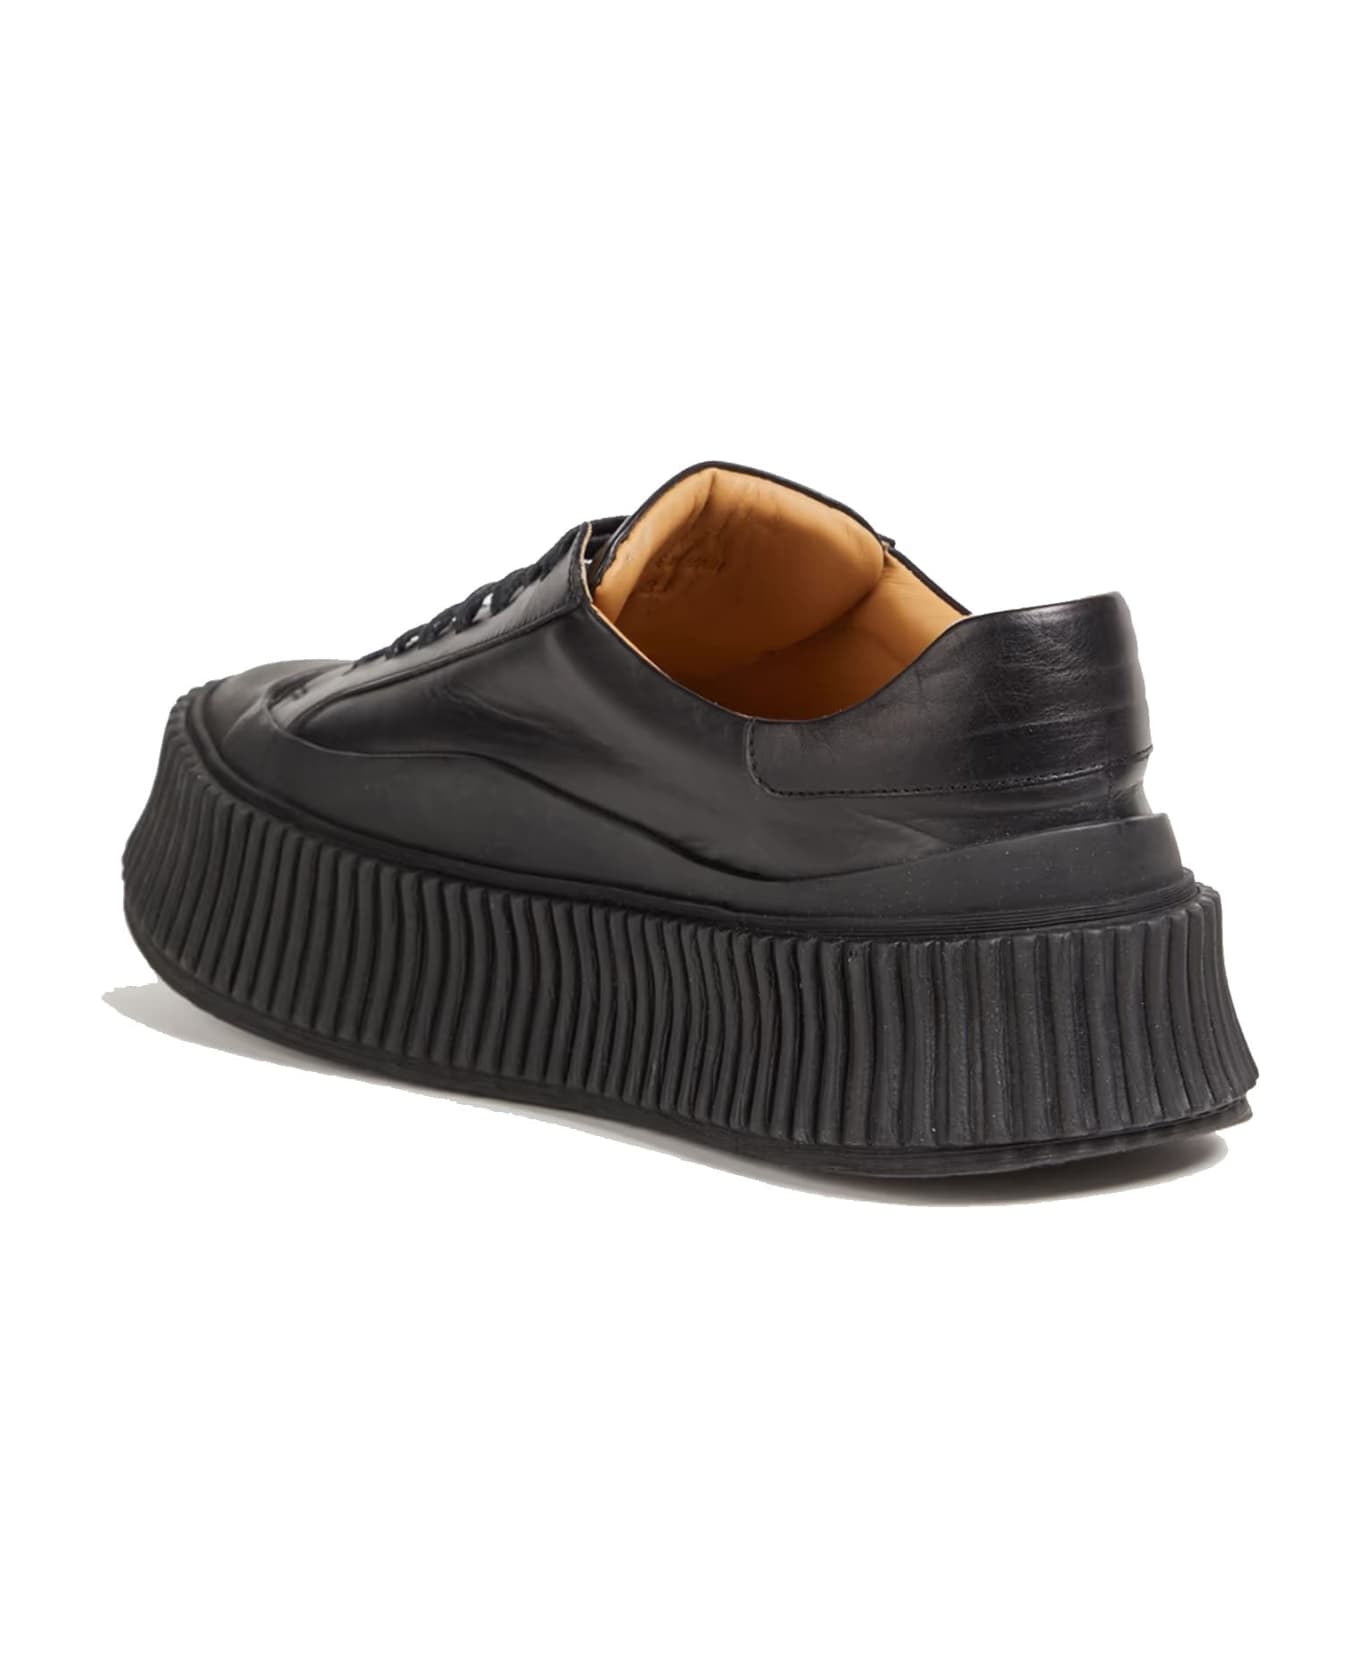 Jil Sander Leather Sneakers - Black